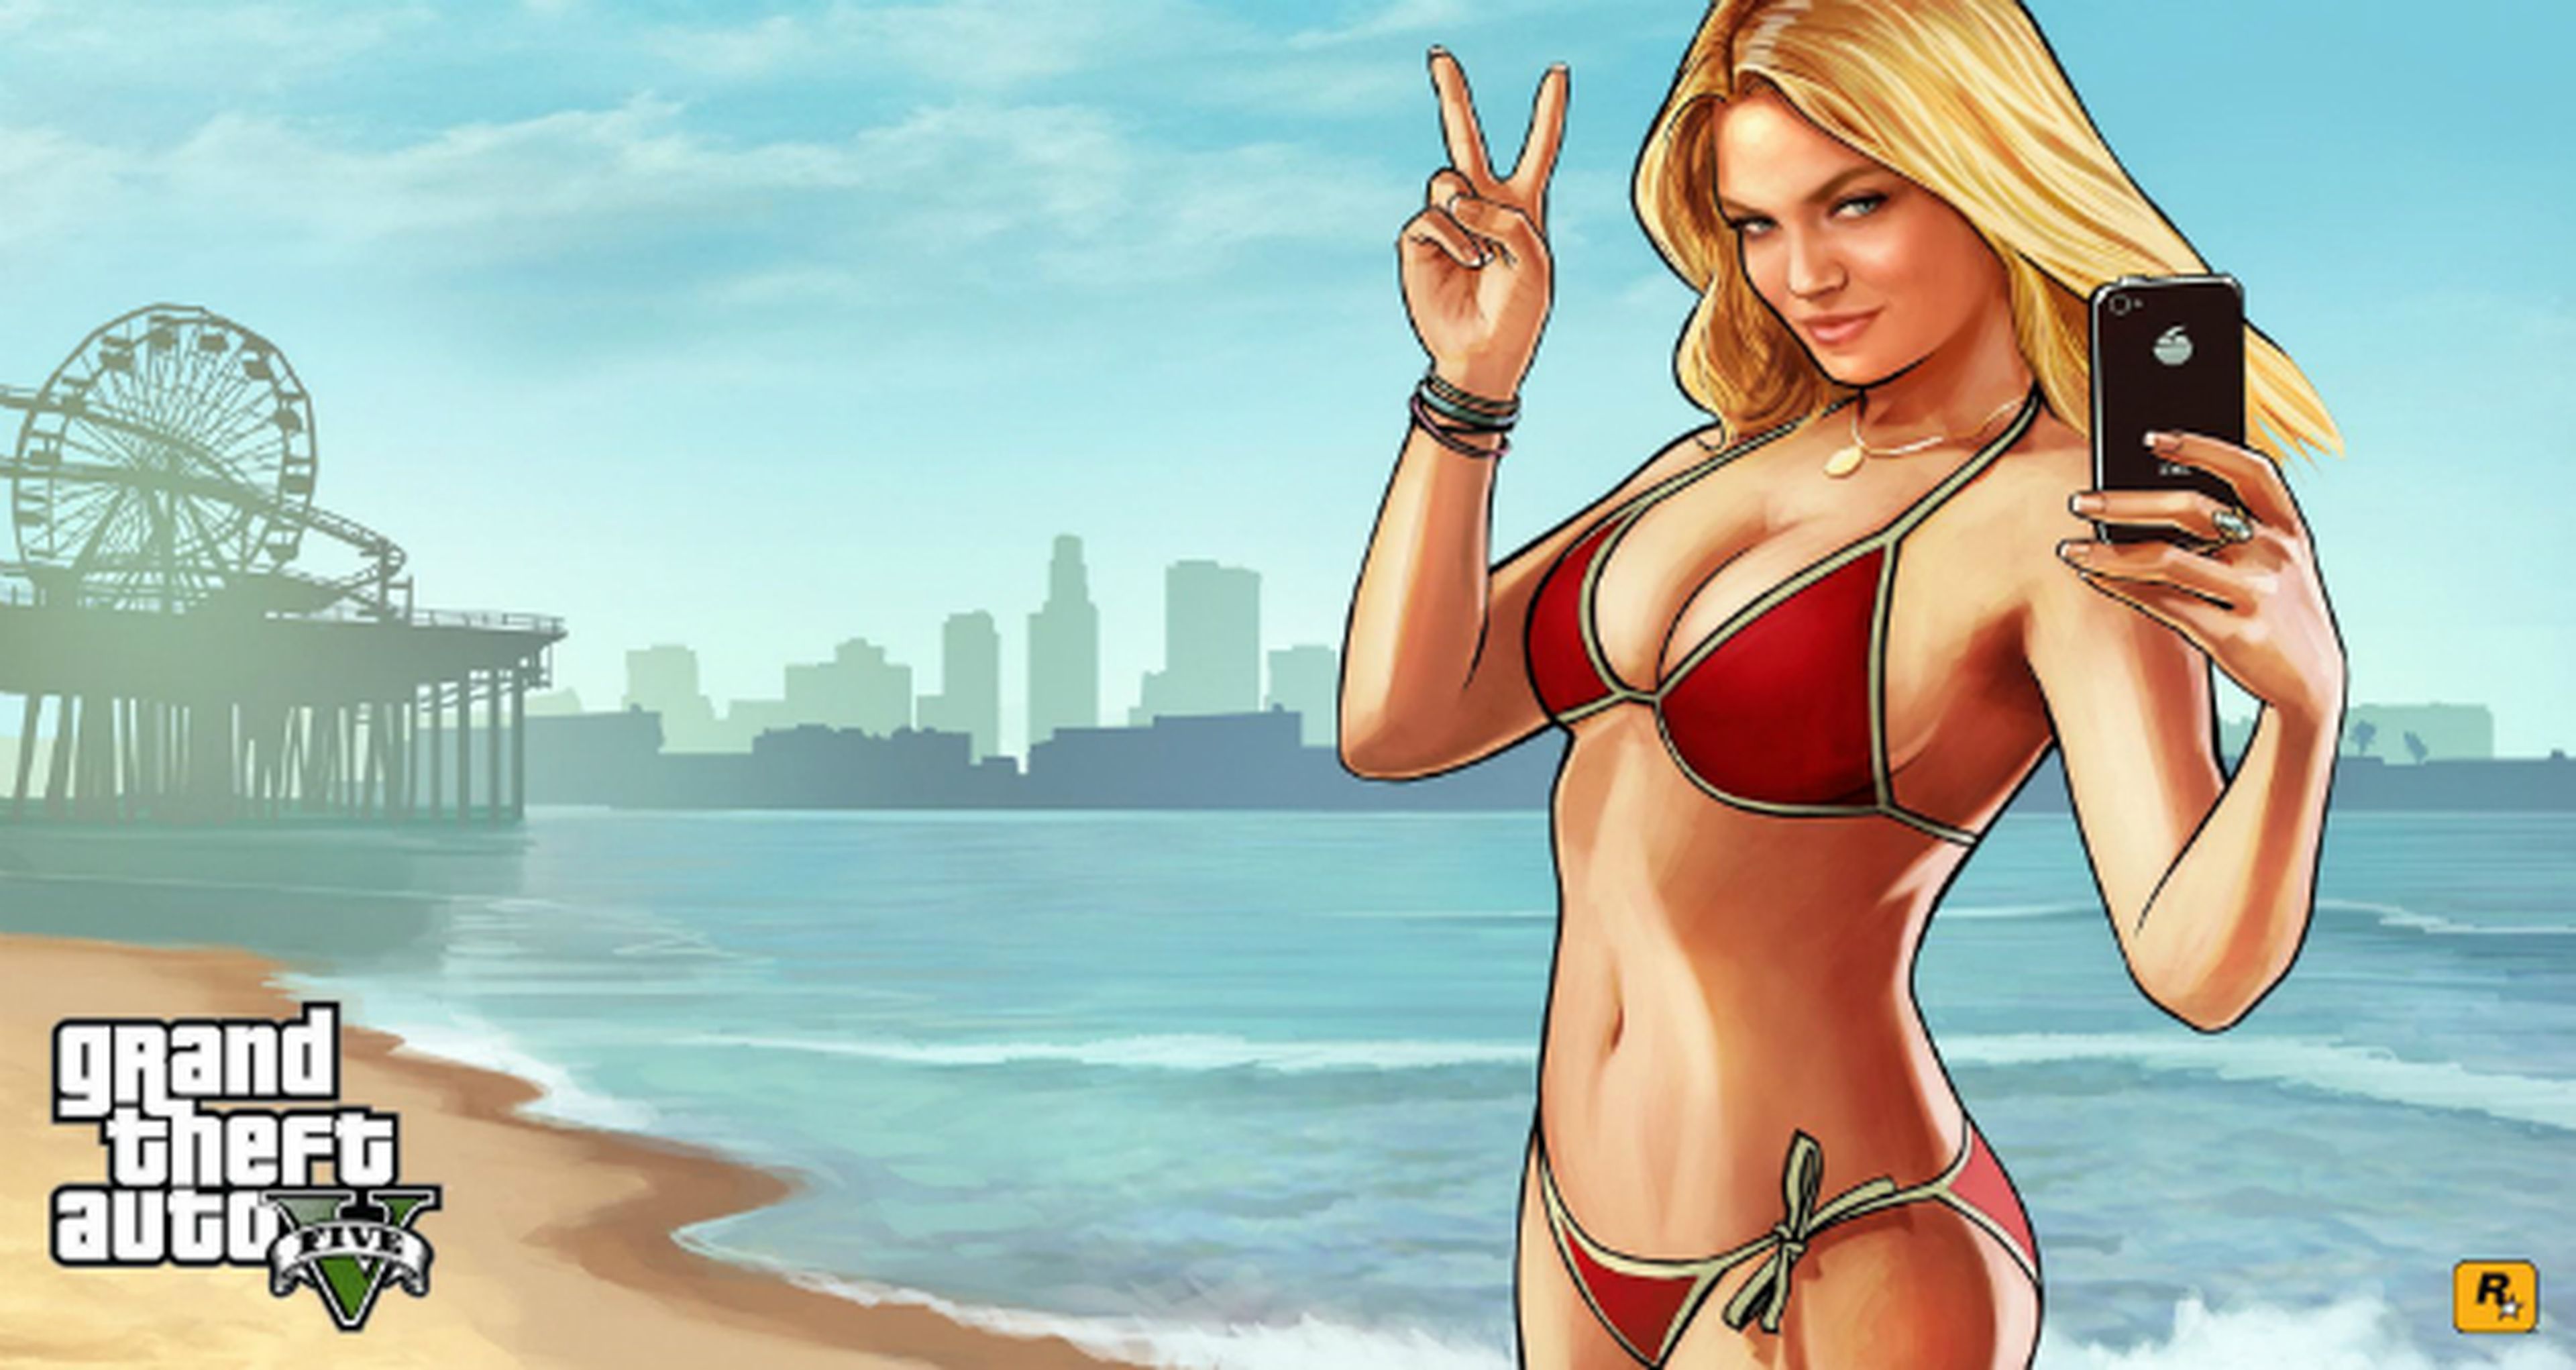 Take Two habla sobre la versión de Grand Theft Auto V para PC